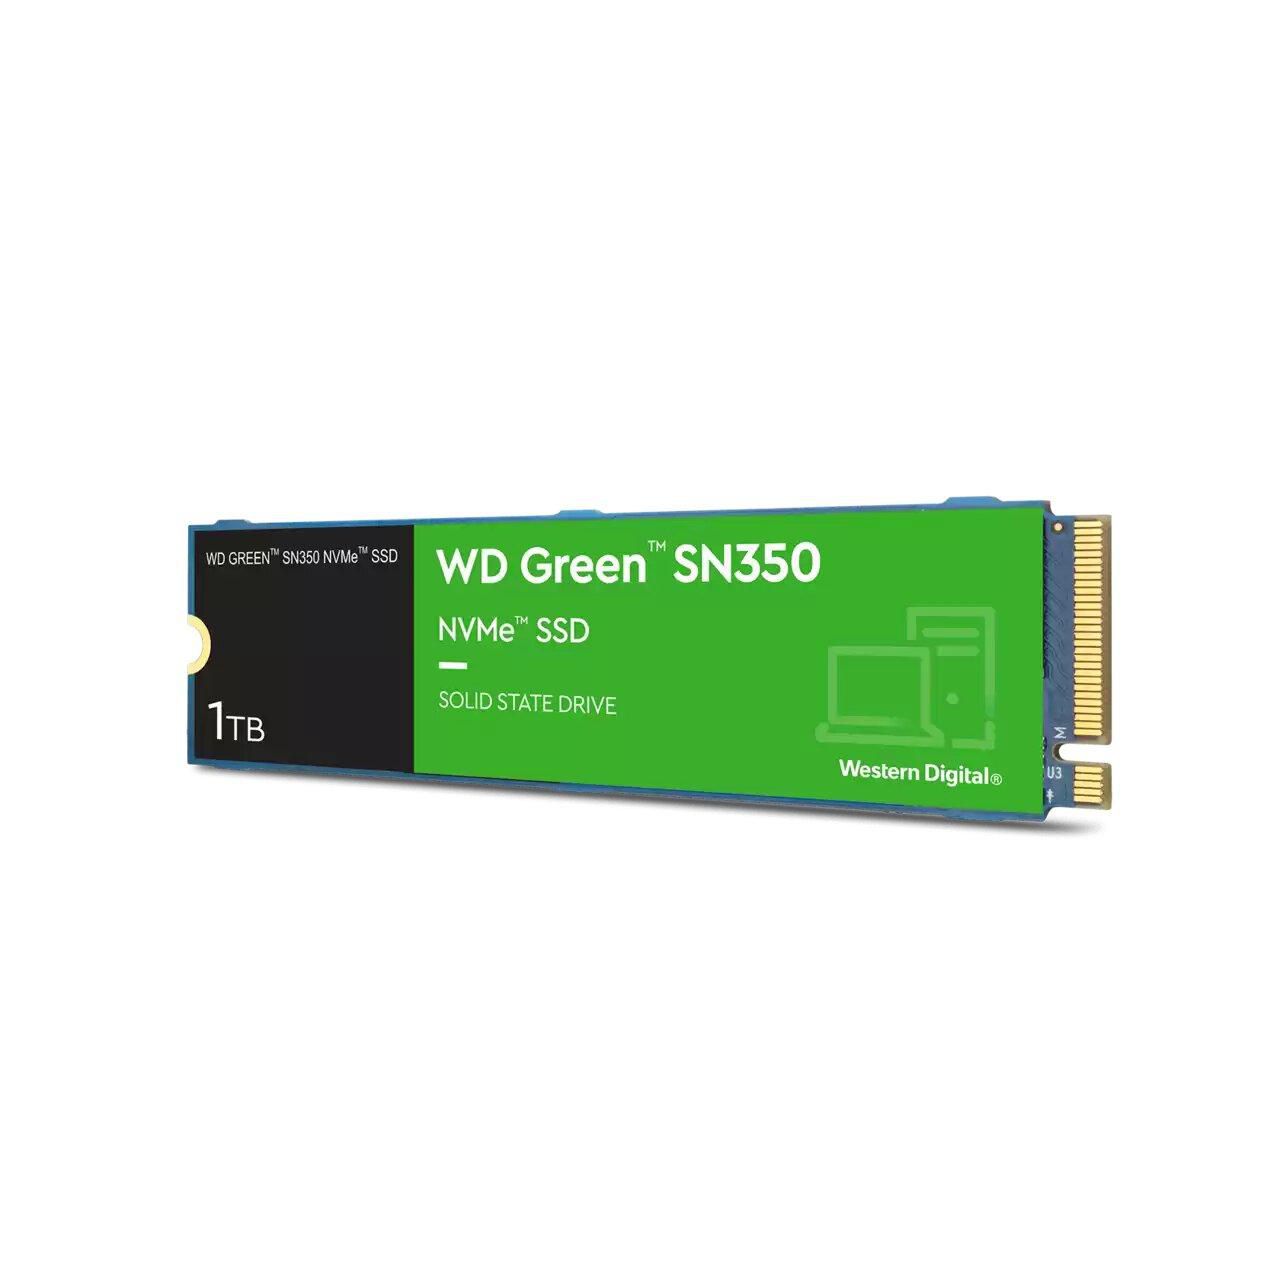 WESTERN DIGITAL WD Green SN350 1TB